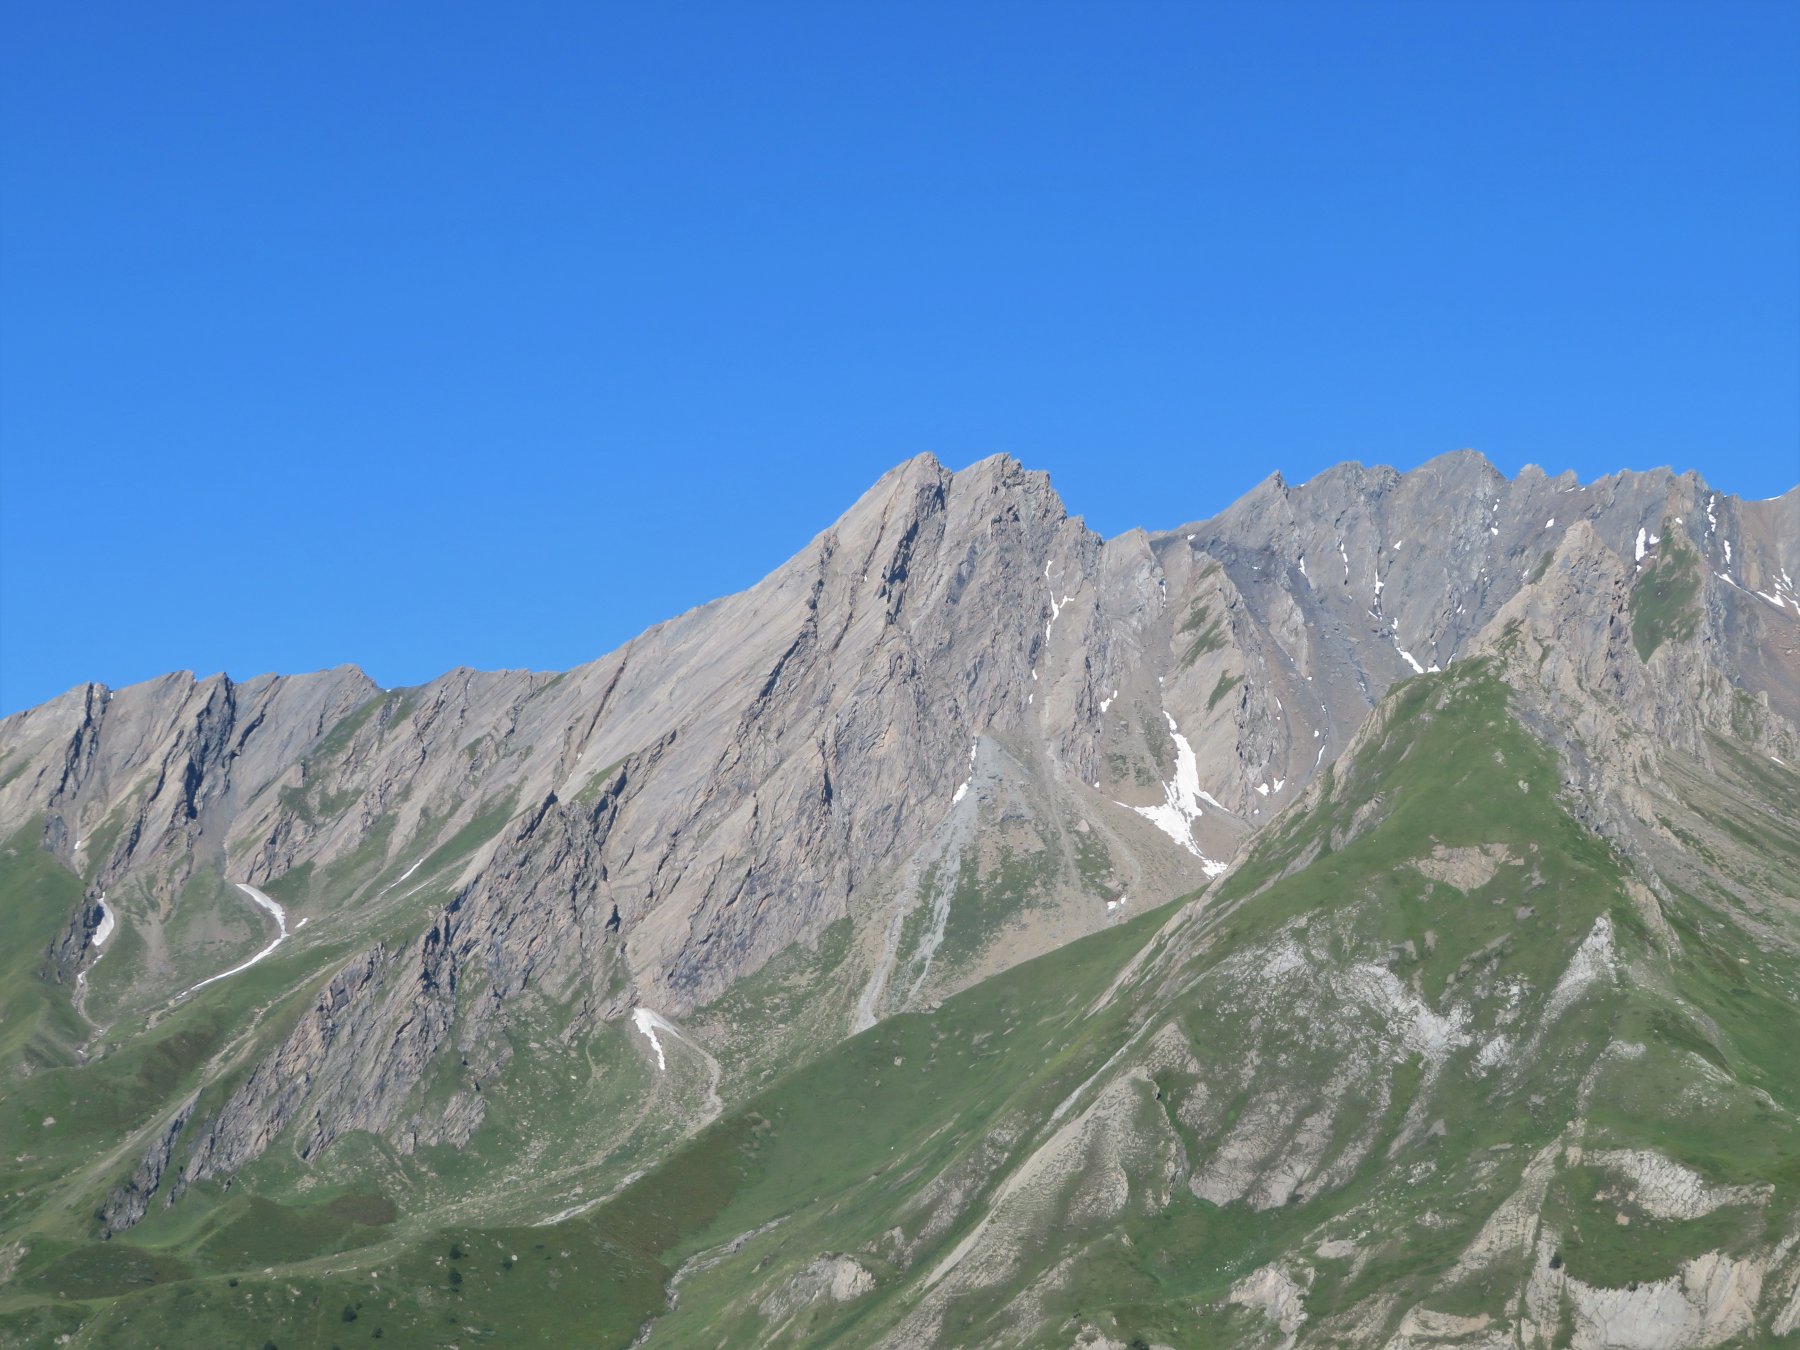 la doppia cima del Creton du Midi, vista dall'inizio del percorso